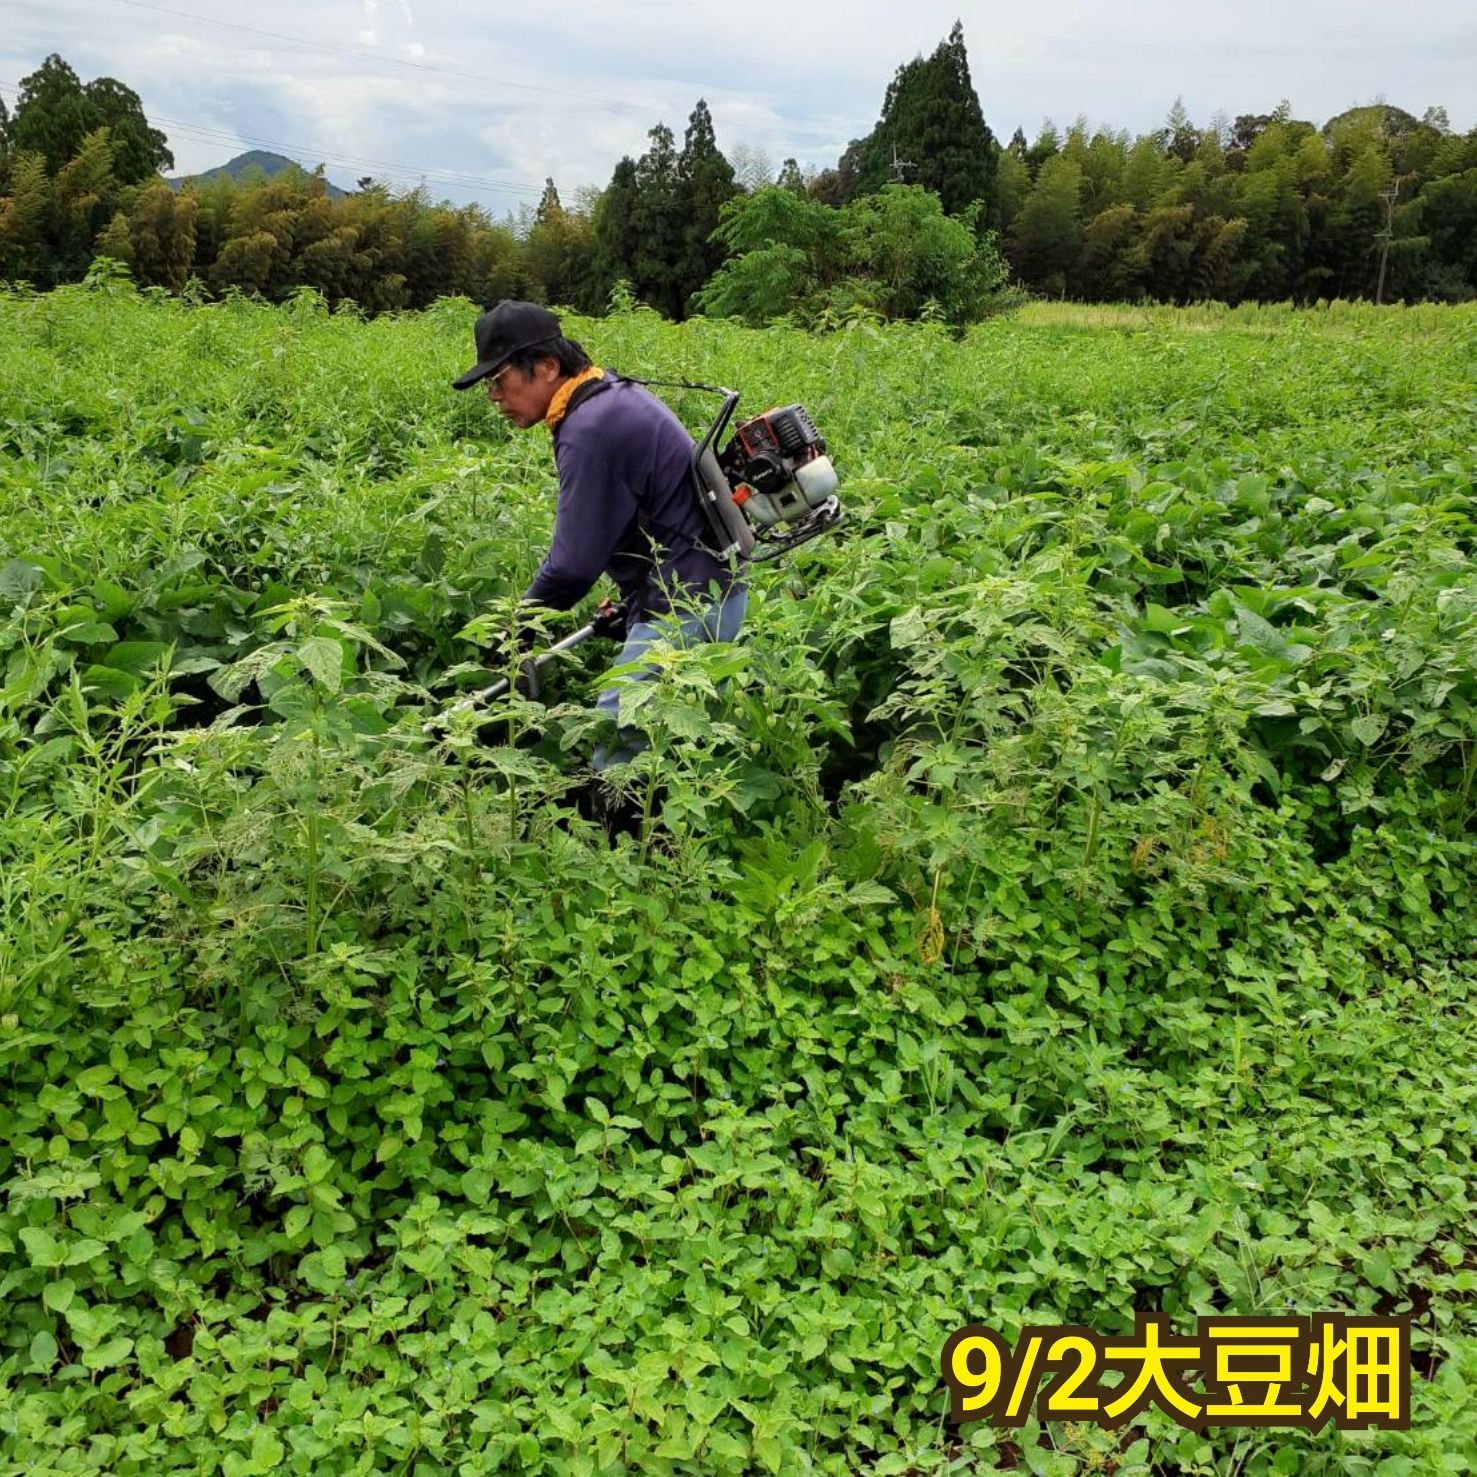 自然栽培 幻の大豆 『八天狗』5kg 熊本県産